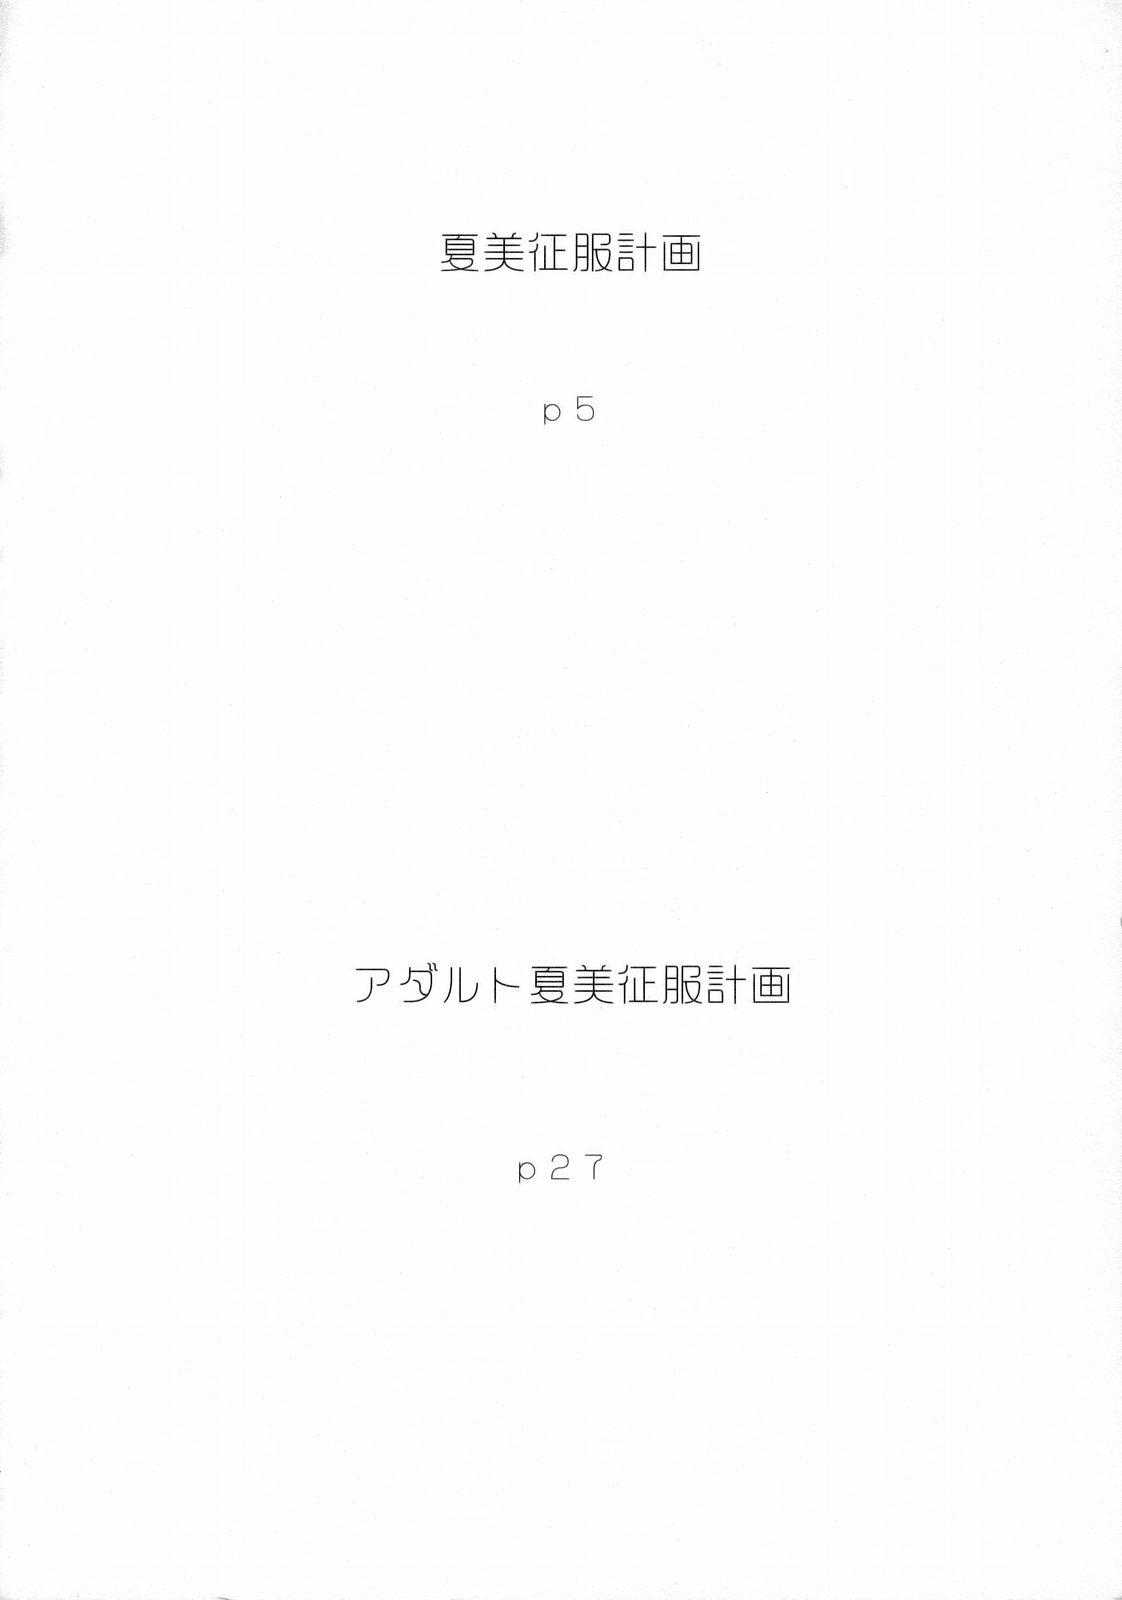 Flaca Natsumi Seifuku Keikaku | Natsumi Uniform Plan - Keroro gunsou Asses - Page 3